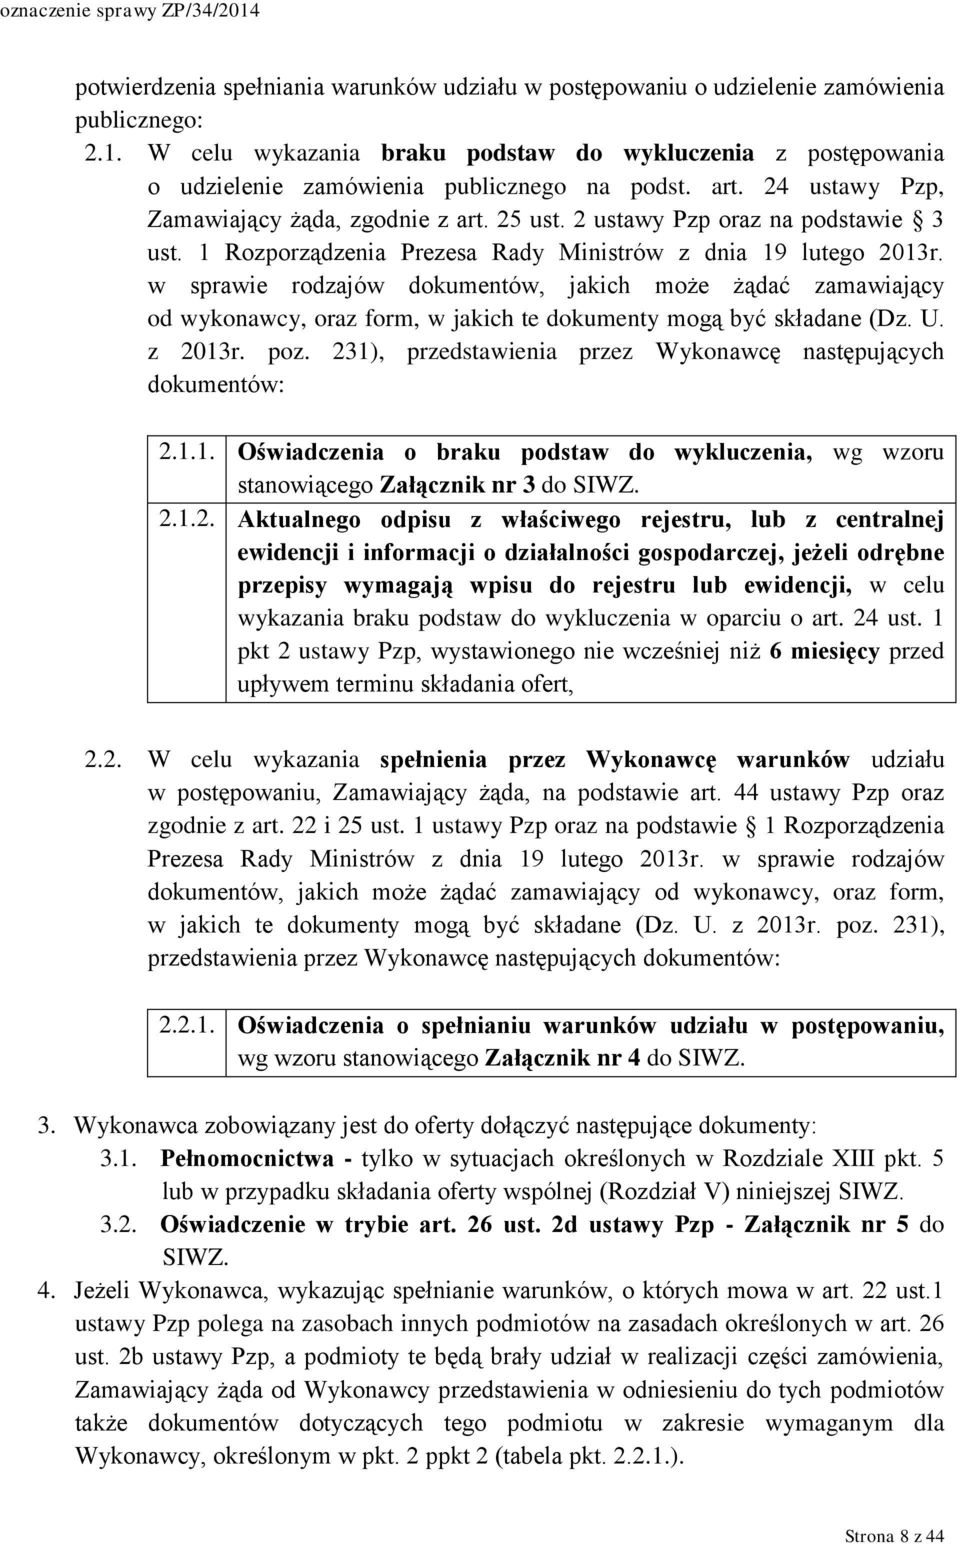 2 ustawy Pzp oraz na podstawie 3 ust. 1 Rozporządzenia Prezesa Rady Ministrów z dnia 19 lutego 2013r.